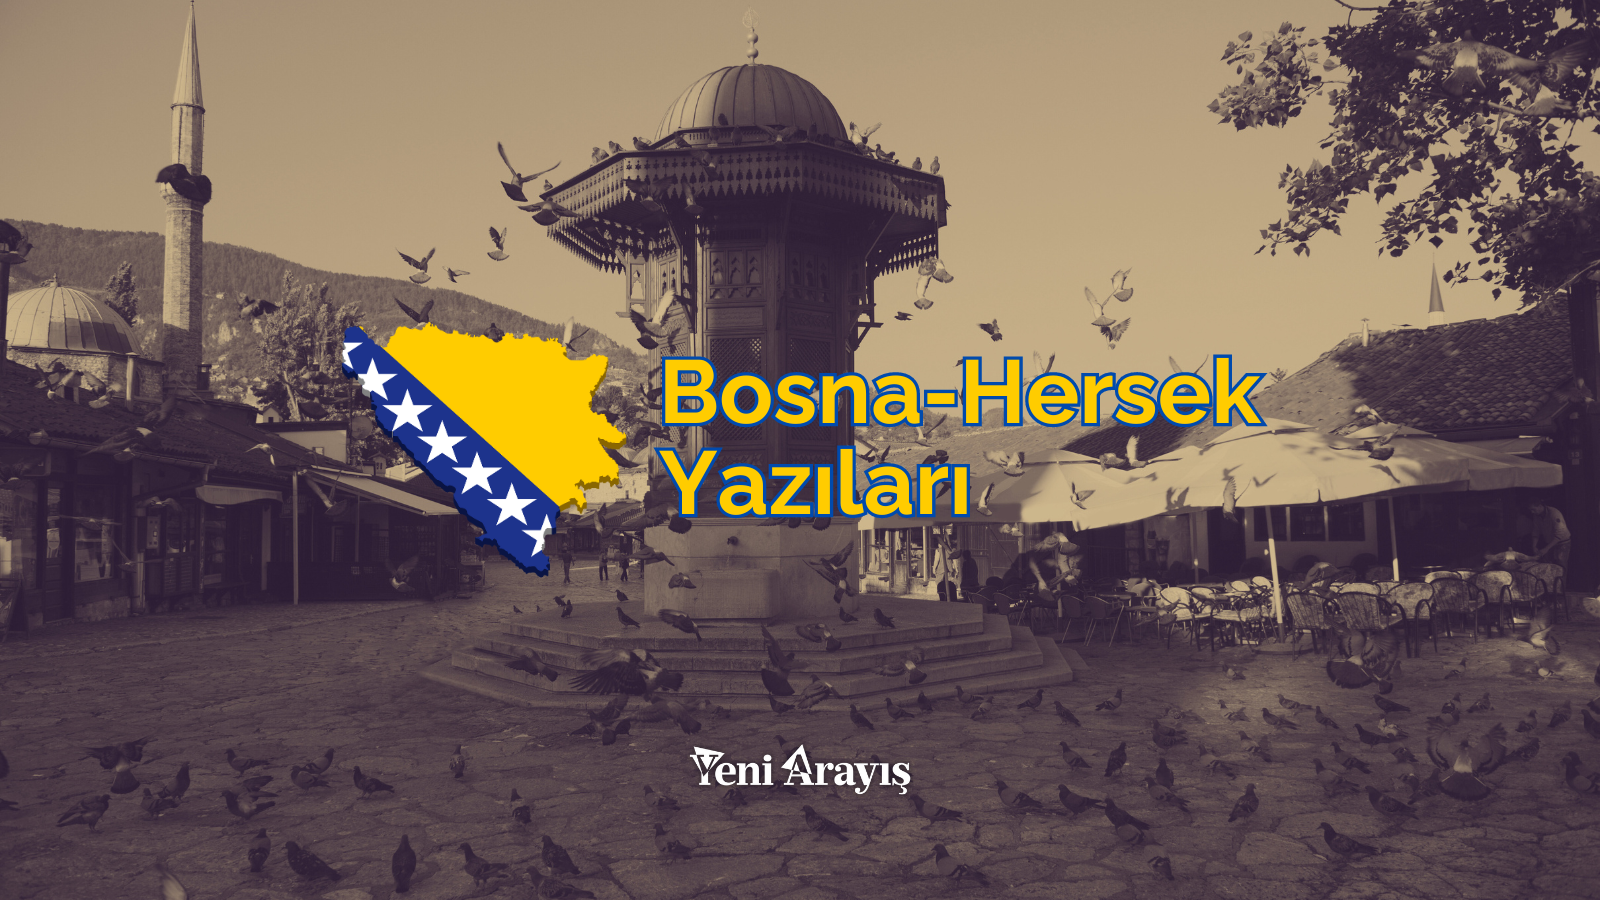 Bosna-Hersek Gezi Yazıları - Bilgehan Ucak